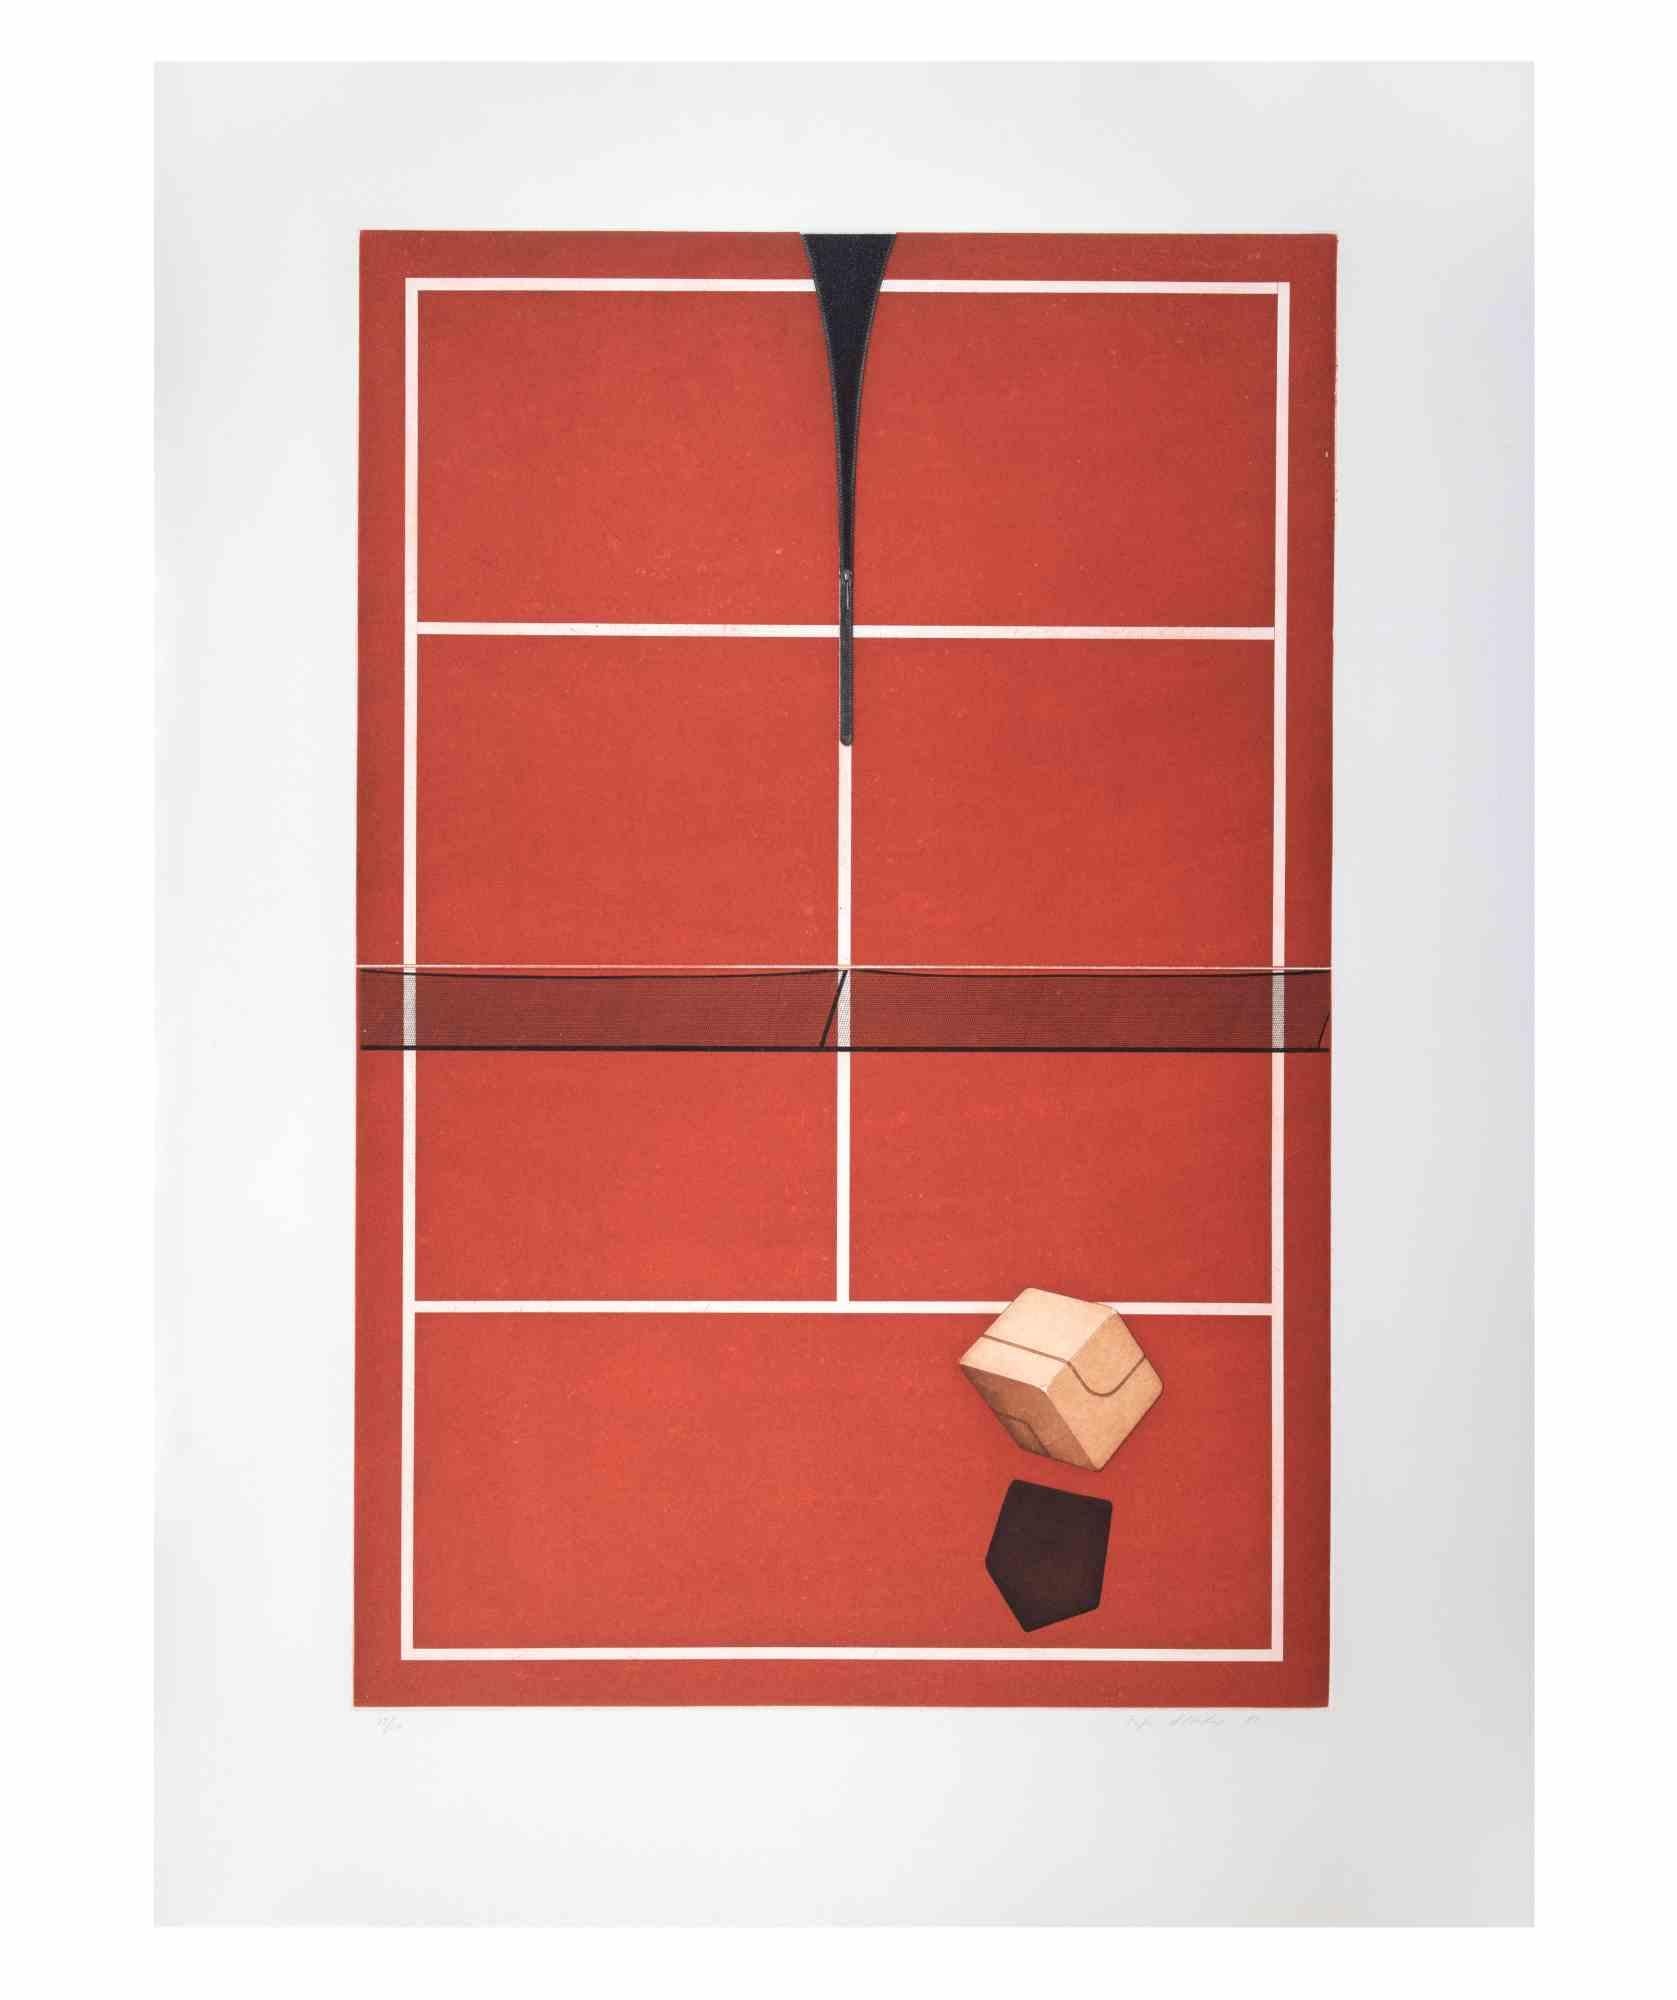 Tennis ist ein zeitgenössisches Kunstwerk des Künstlers Fifo Stricker aus dem Jahr 1982.

Gemischte farbige Aquatinta und Radierung. 

Vom Künstler am rechten unteren Rand handsigniert und datiert.

Am linken unteren Rand nummeriert. Auflage von